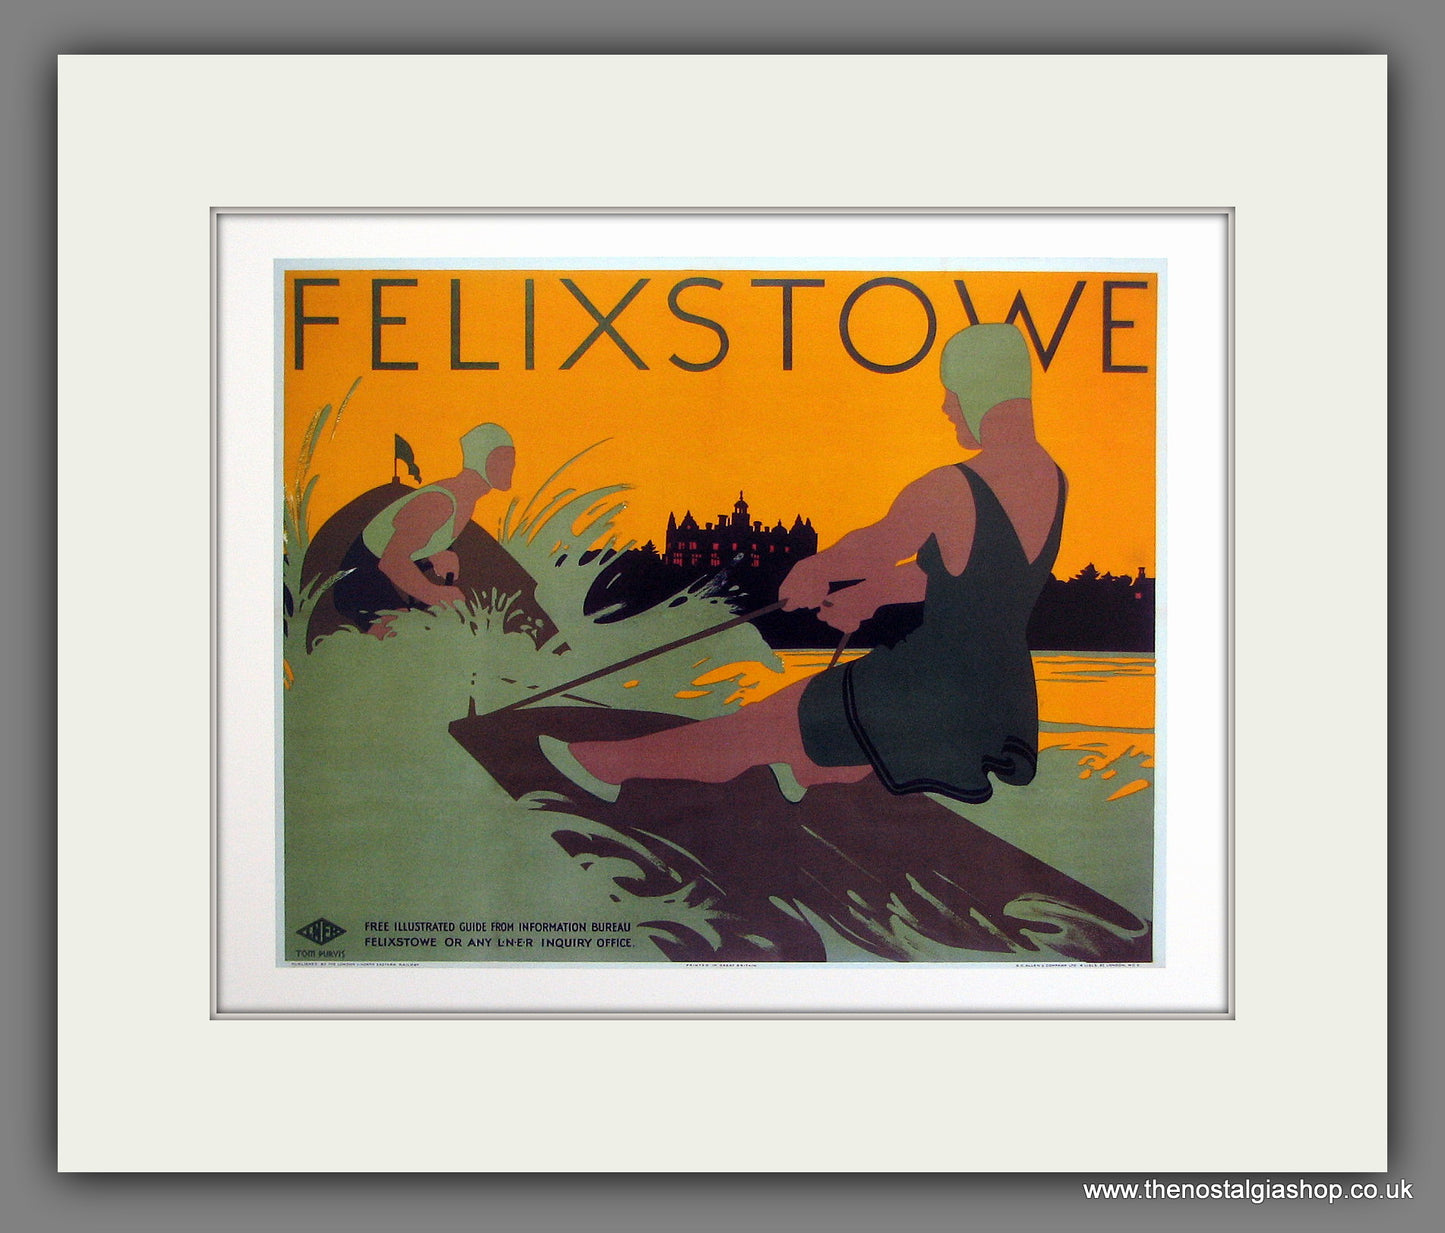 Felixstowe. Railway Travel Advert. (Reproduction). Mounted Print.